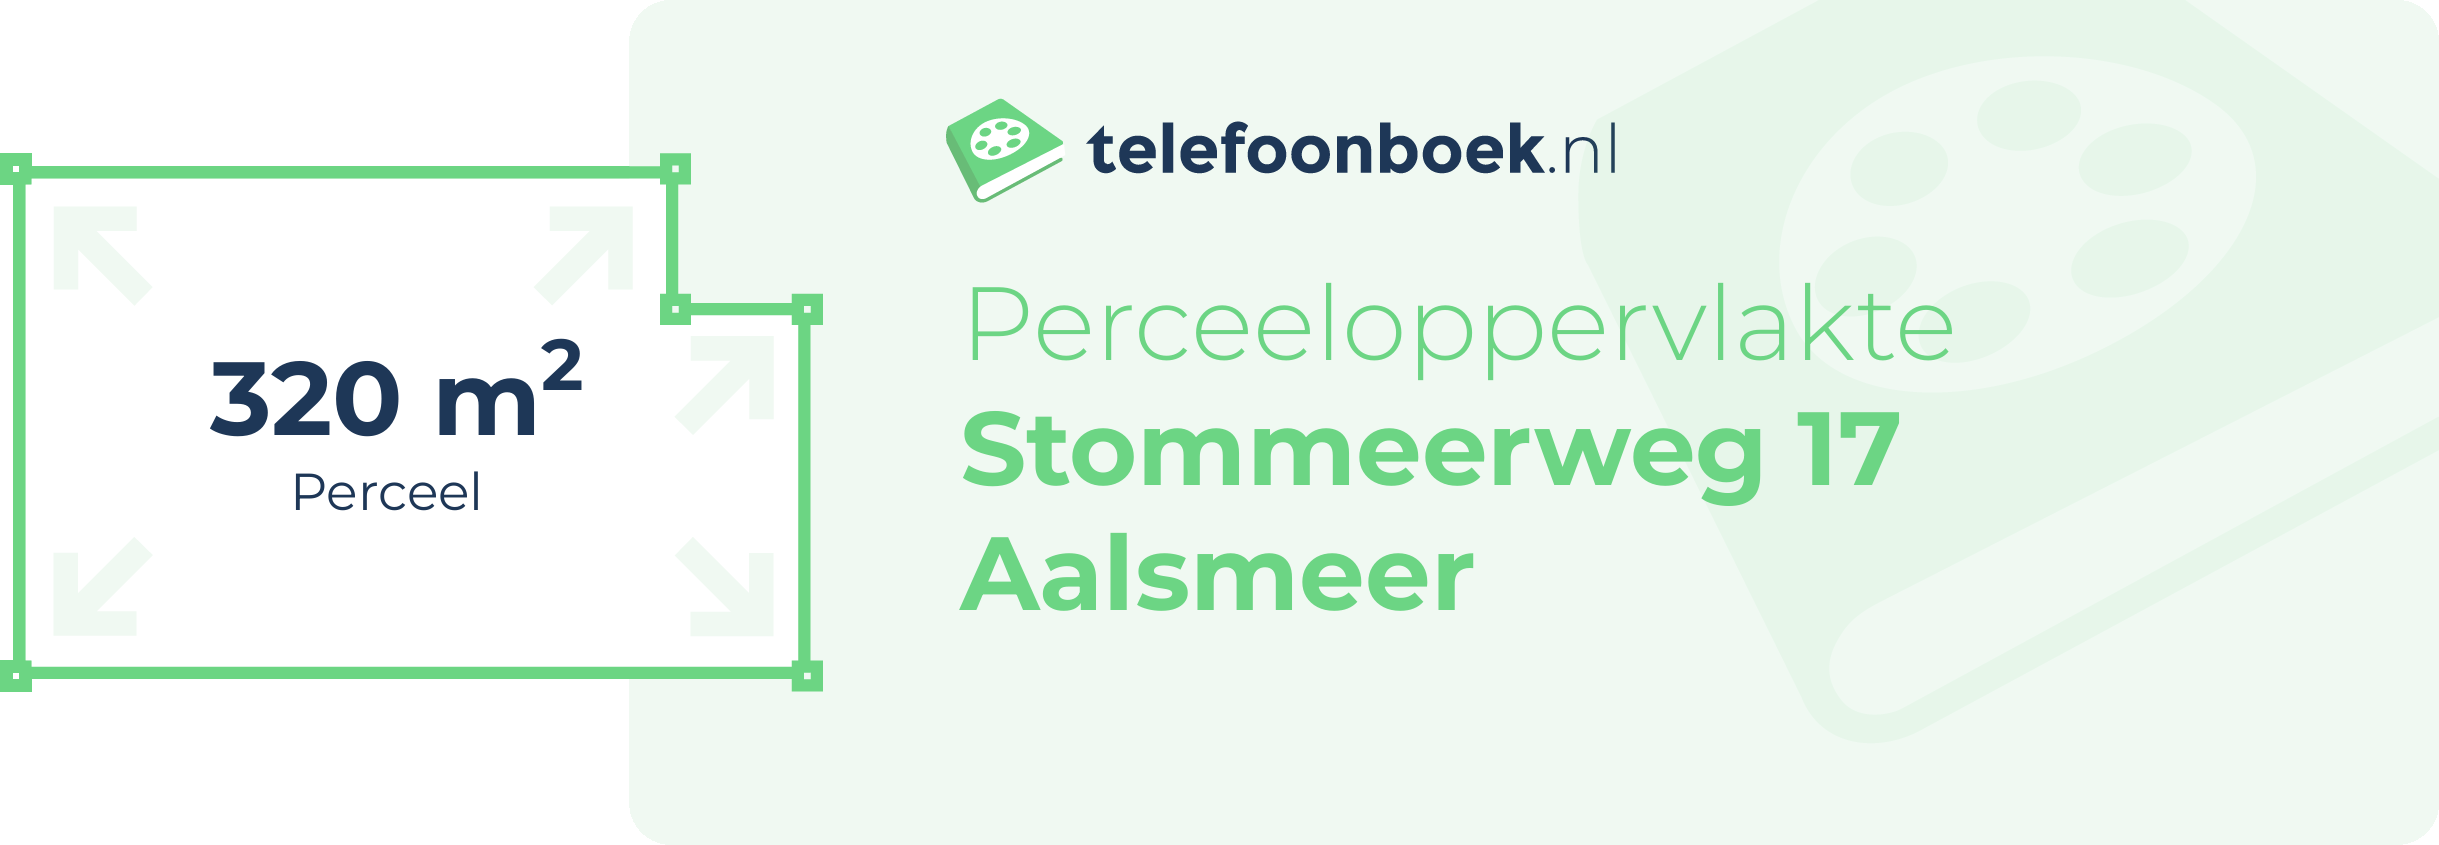 Perceeloppervlakte Stommeerweg 17 Aalsmeer